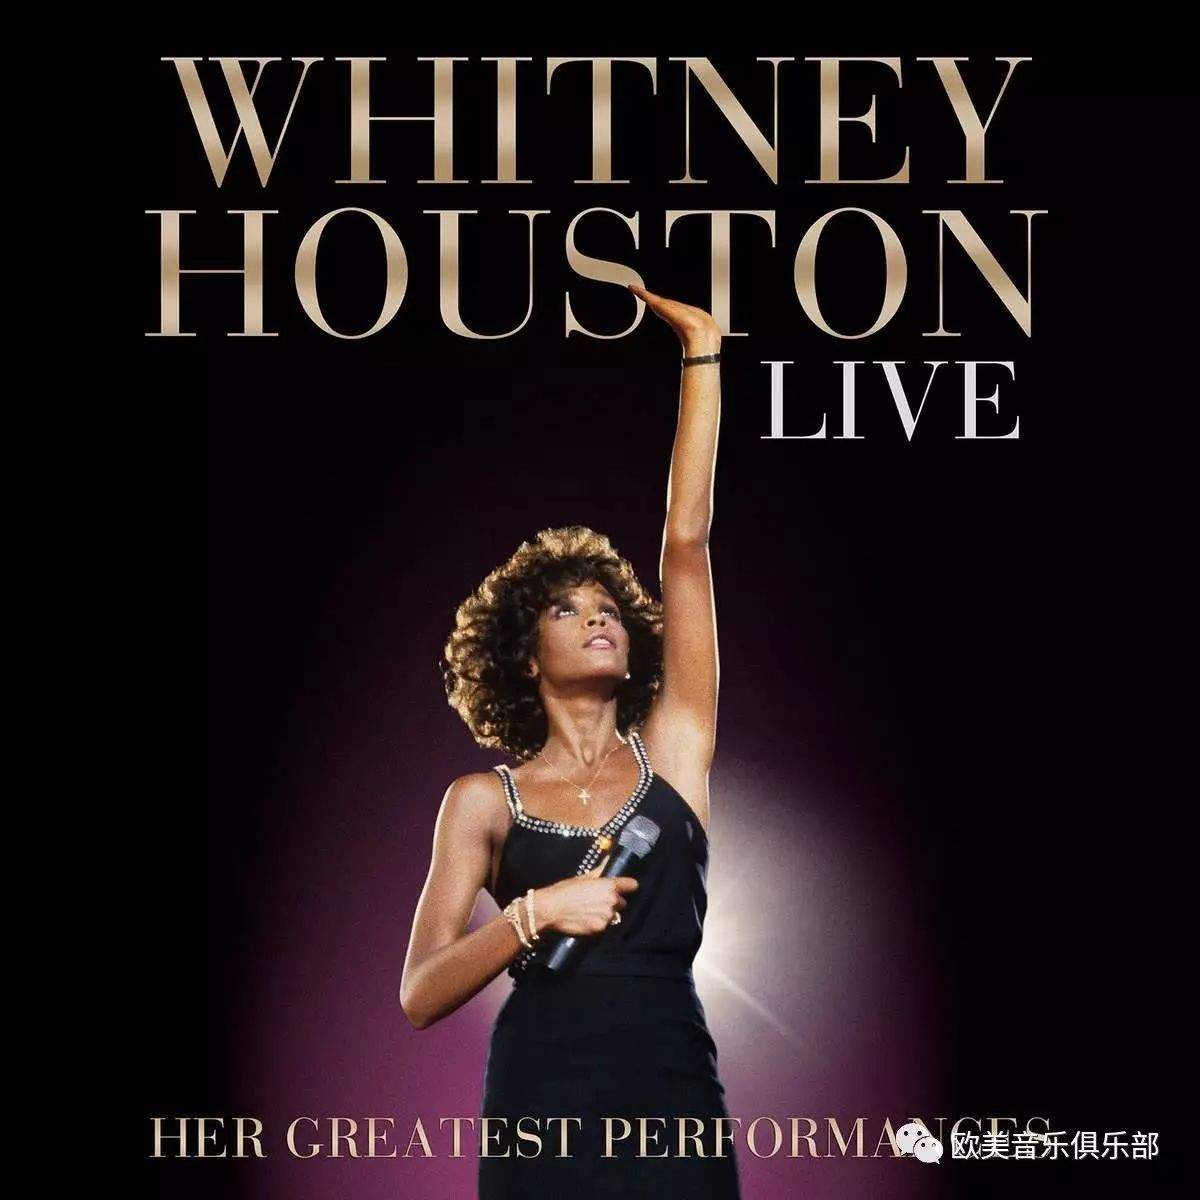 【欧美现场】Whitney Houston Live in Brazil 1994